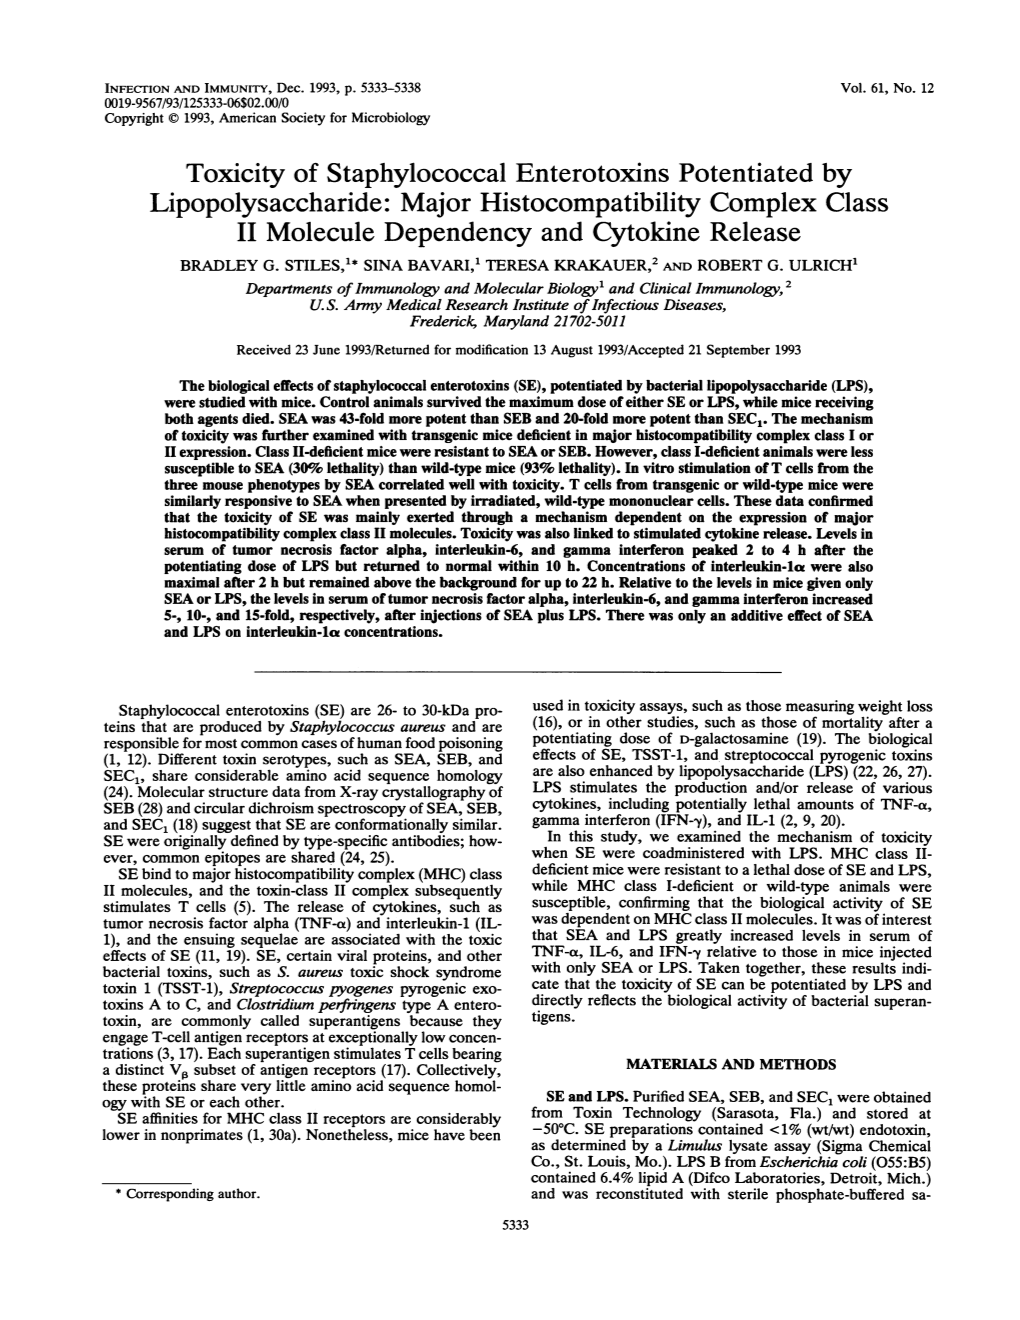 Lipopolysaccharide: Majorhistocompatibility Complex